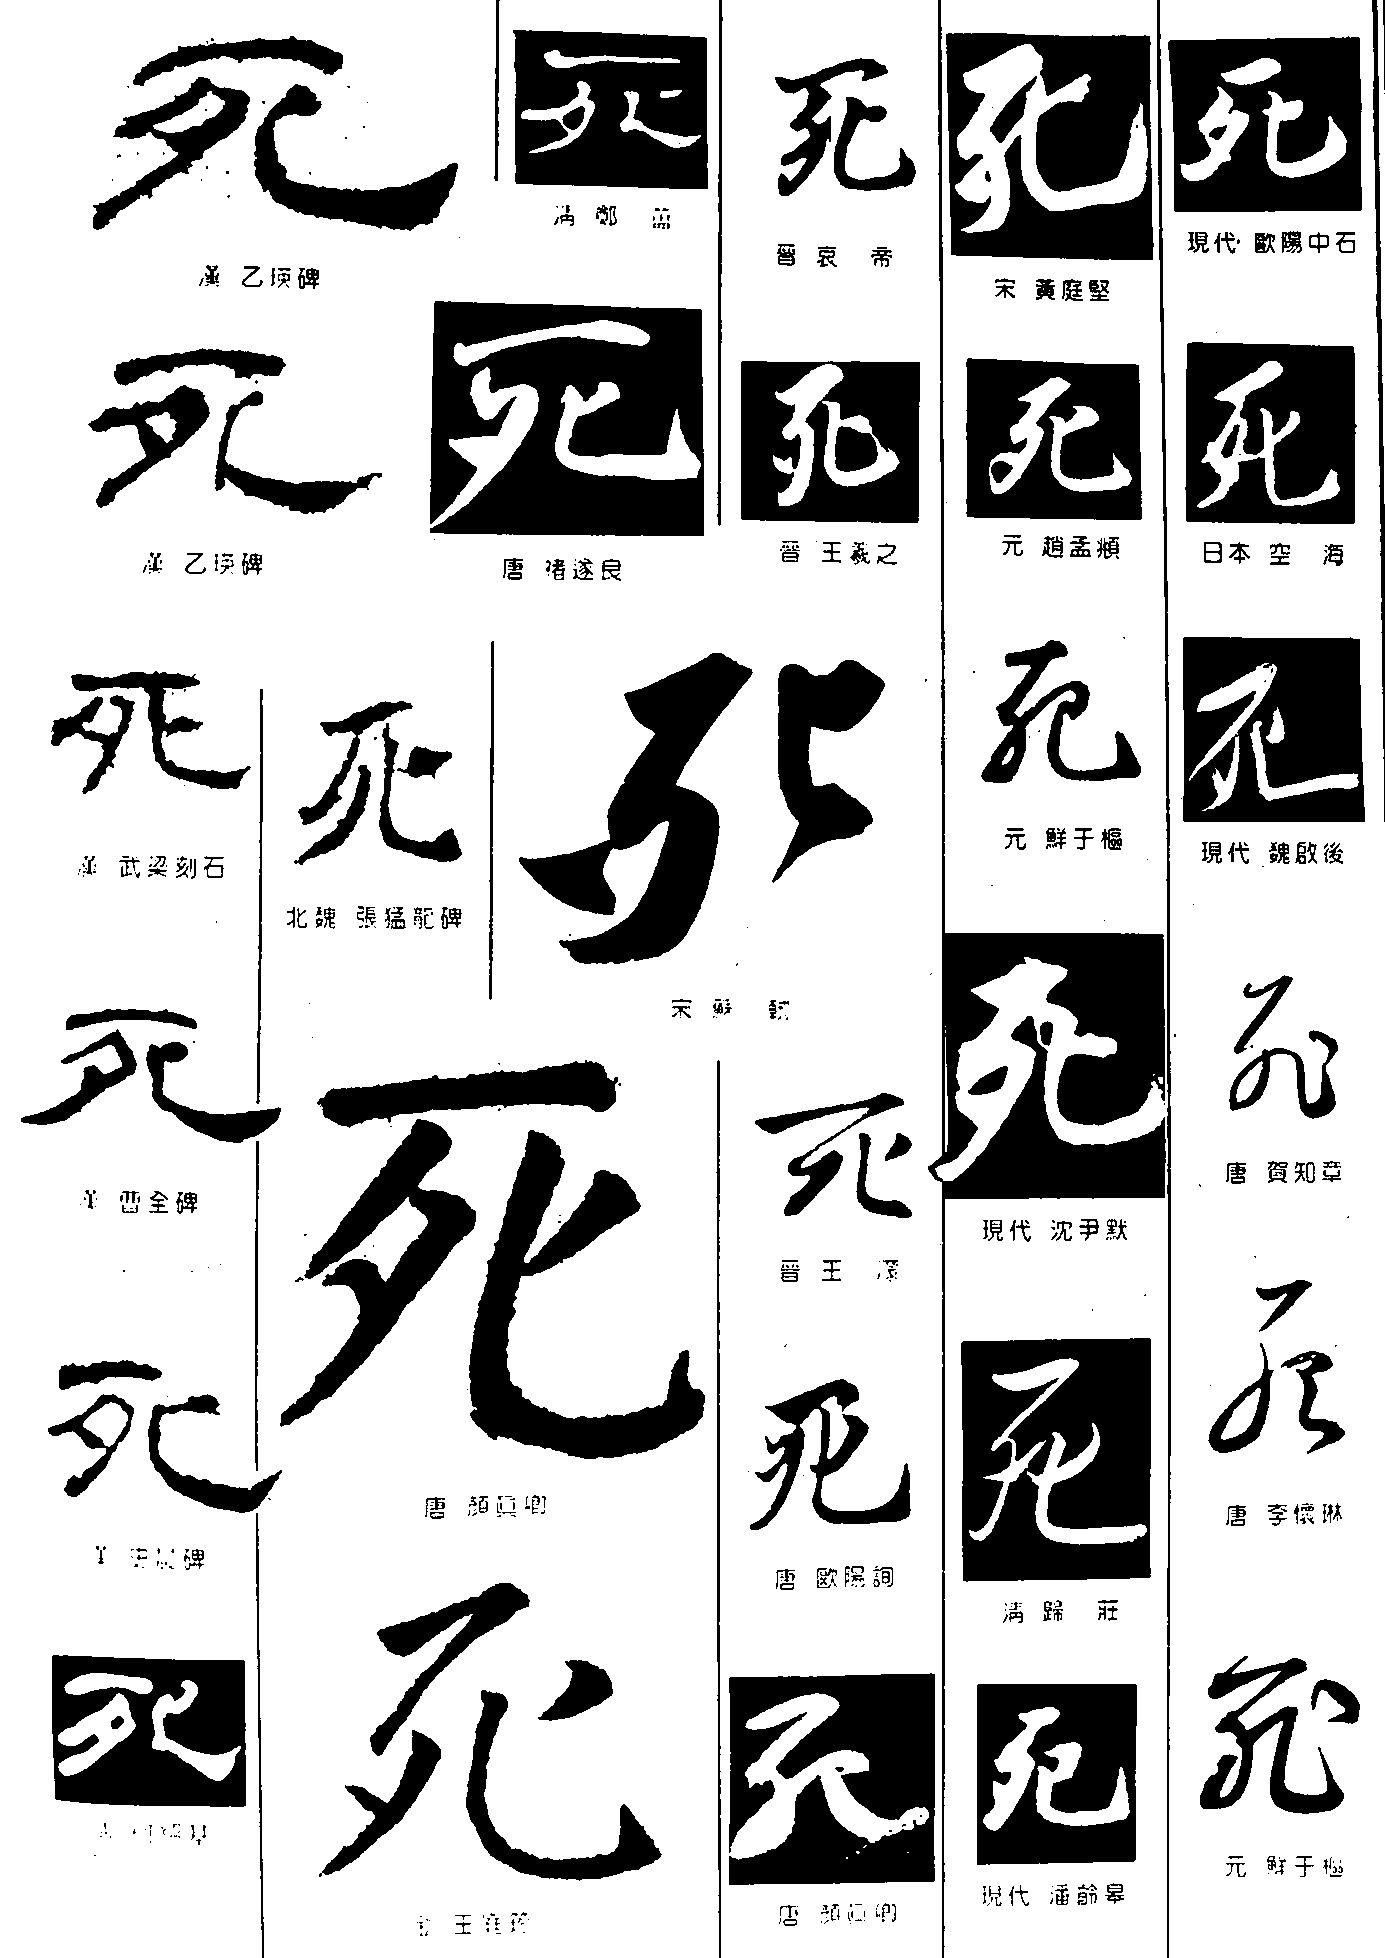 死_书法字体_字体设计作品-中国字体设计网_ziti.